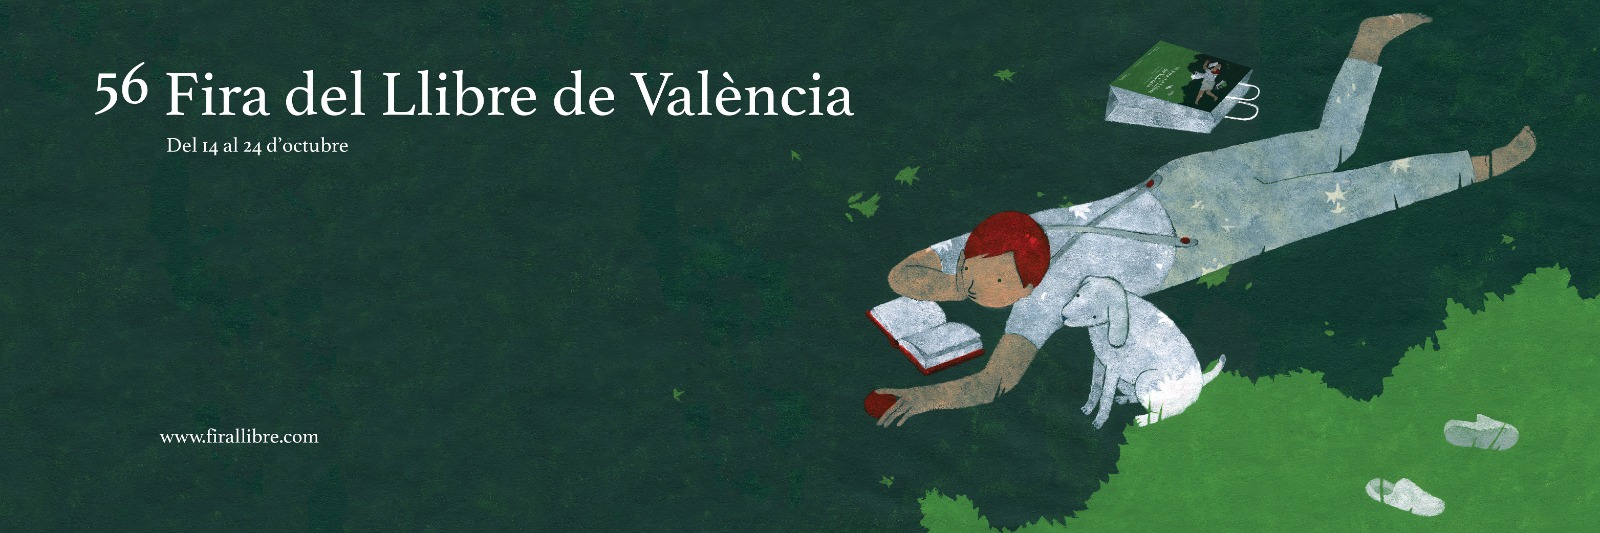 56 Fira del Llibre de València